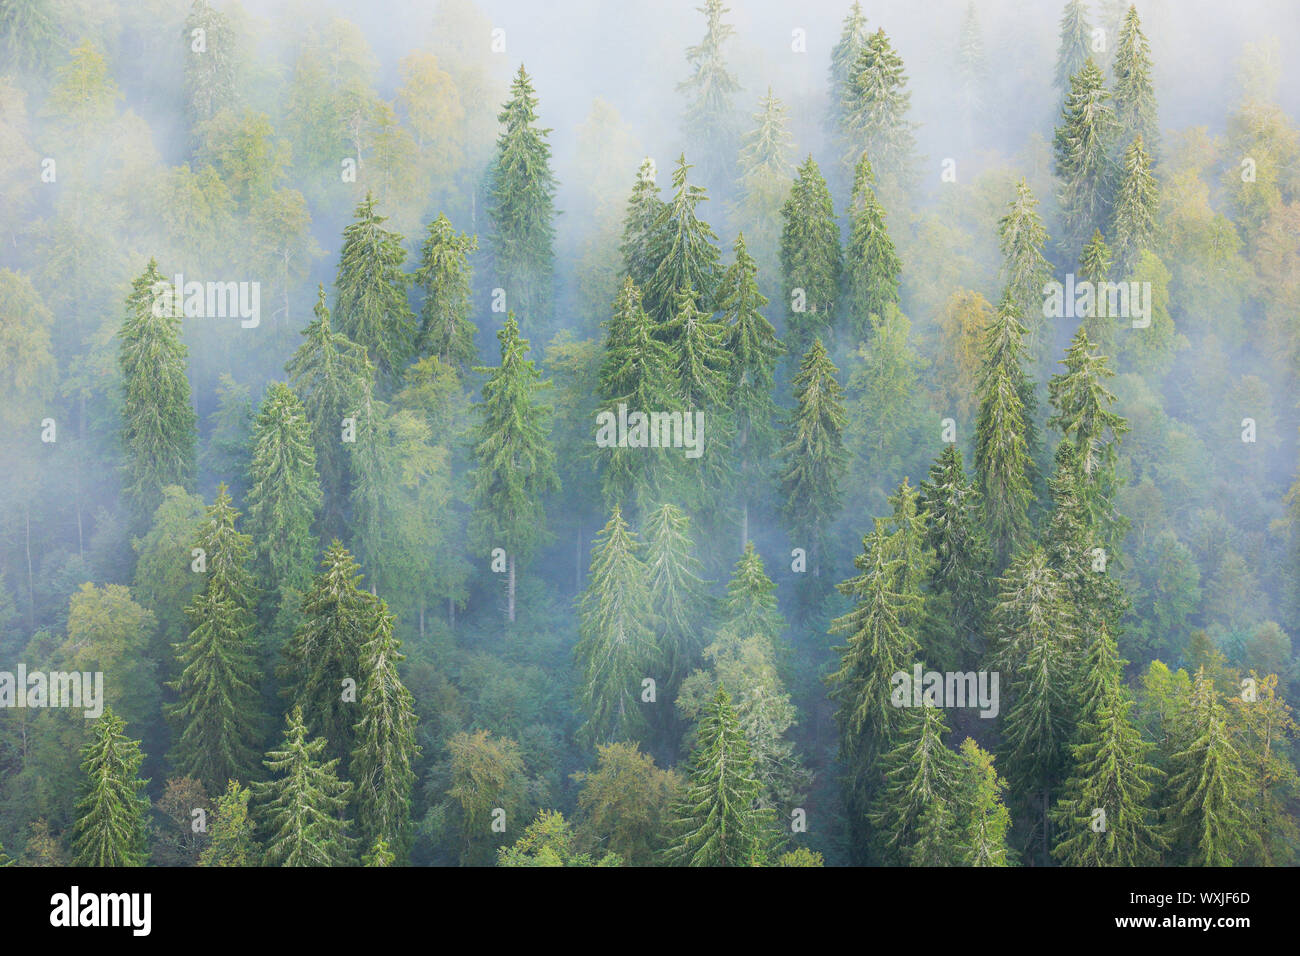 Norway Spruce (Picea abies). Forest in fog. Neuenburg, Switzerland Stock Photo